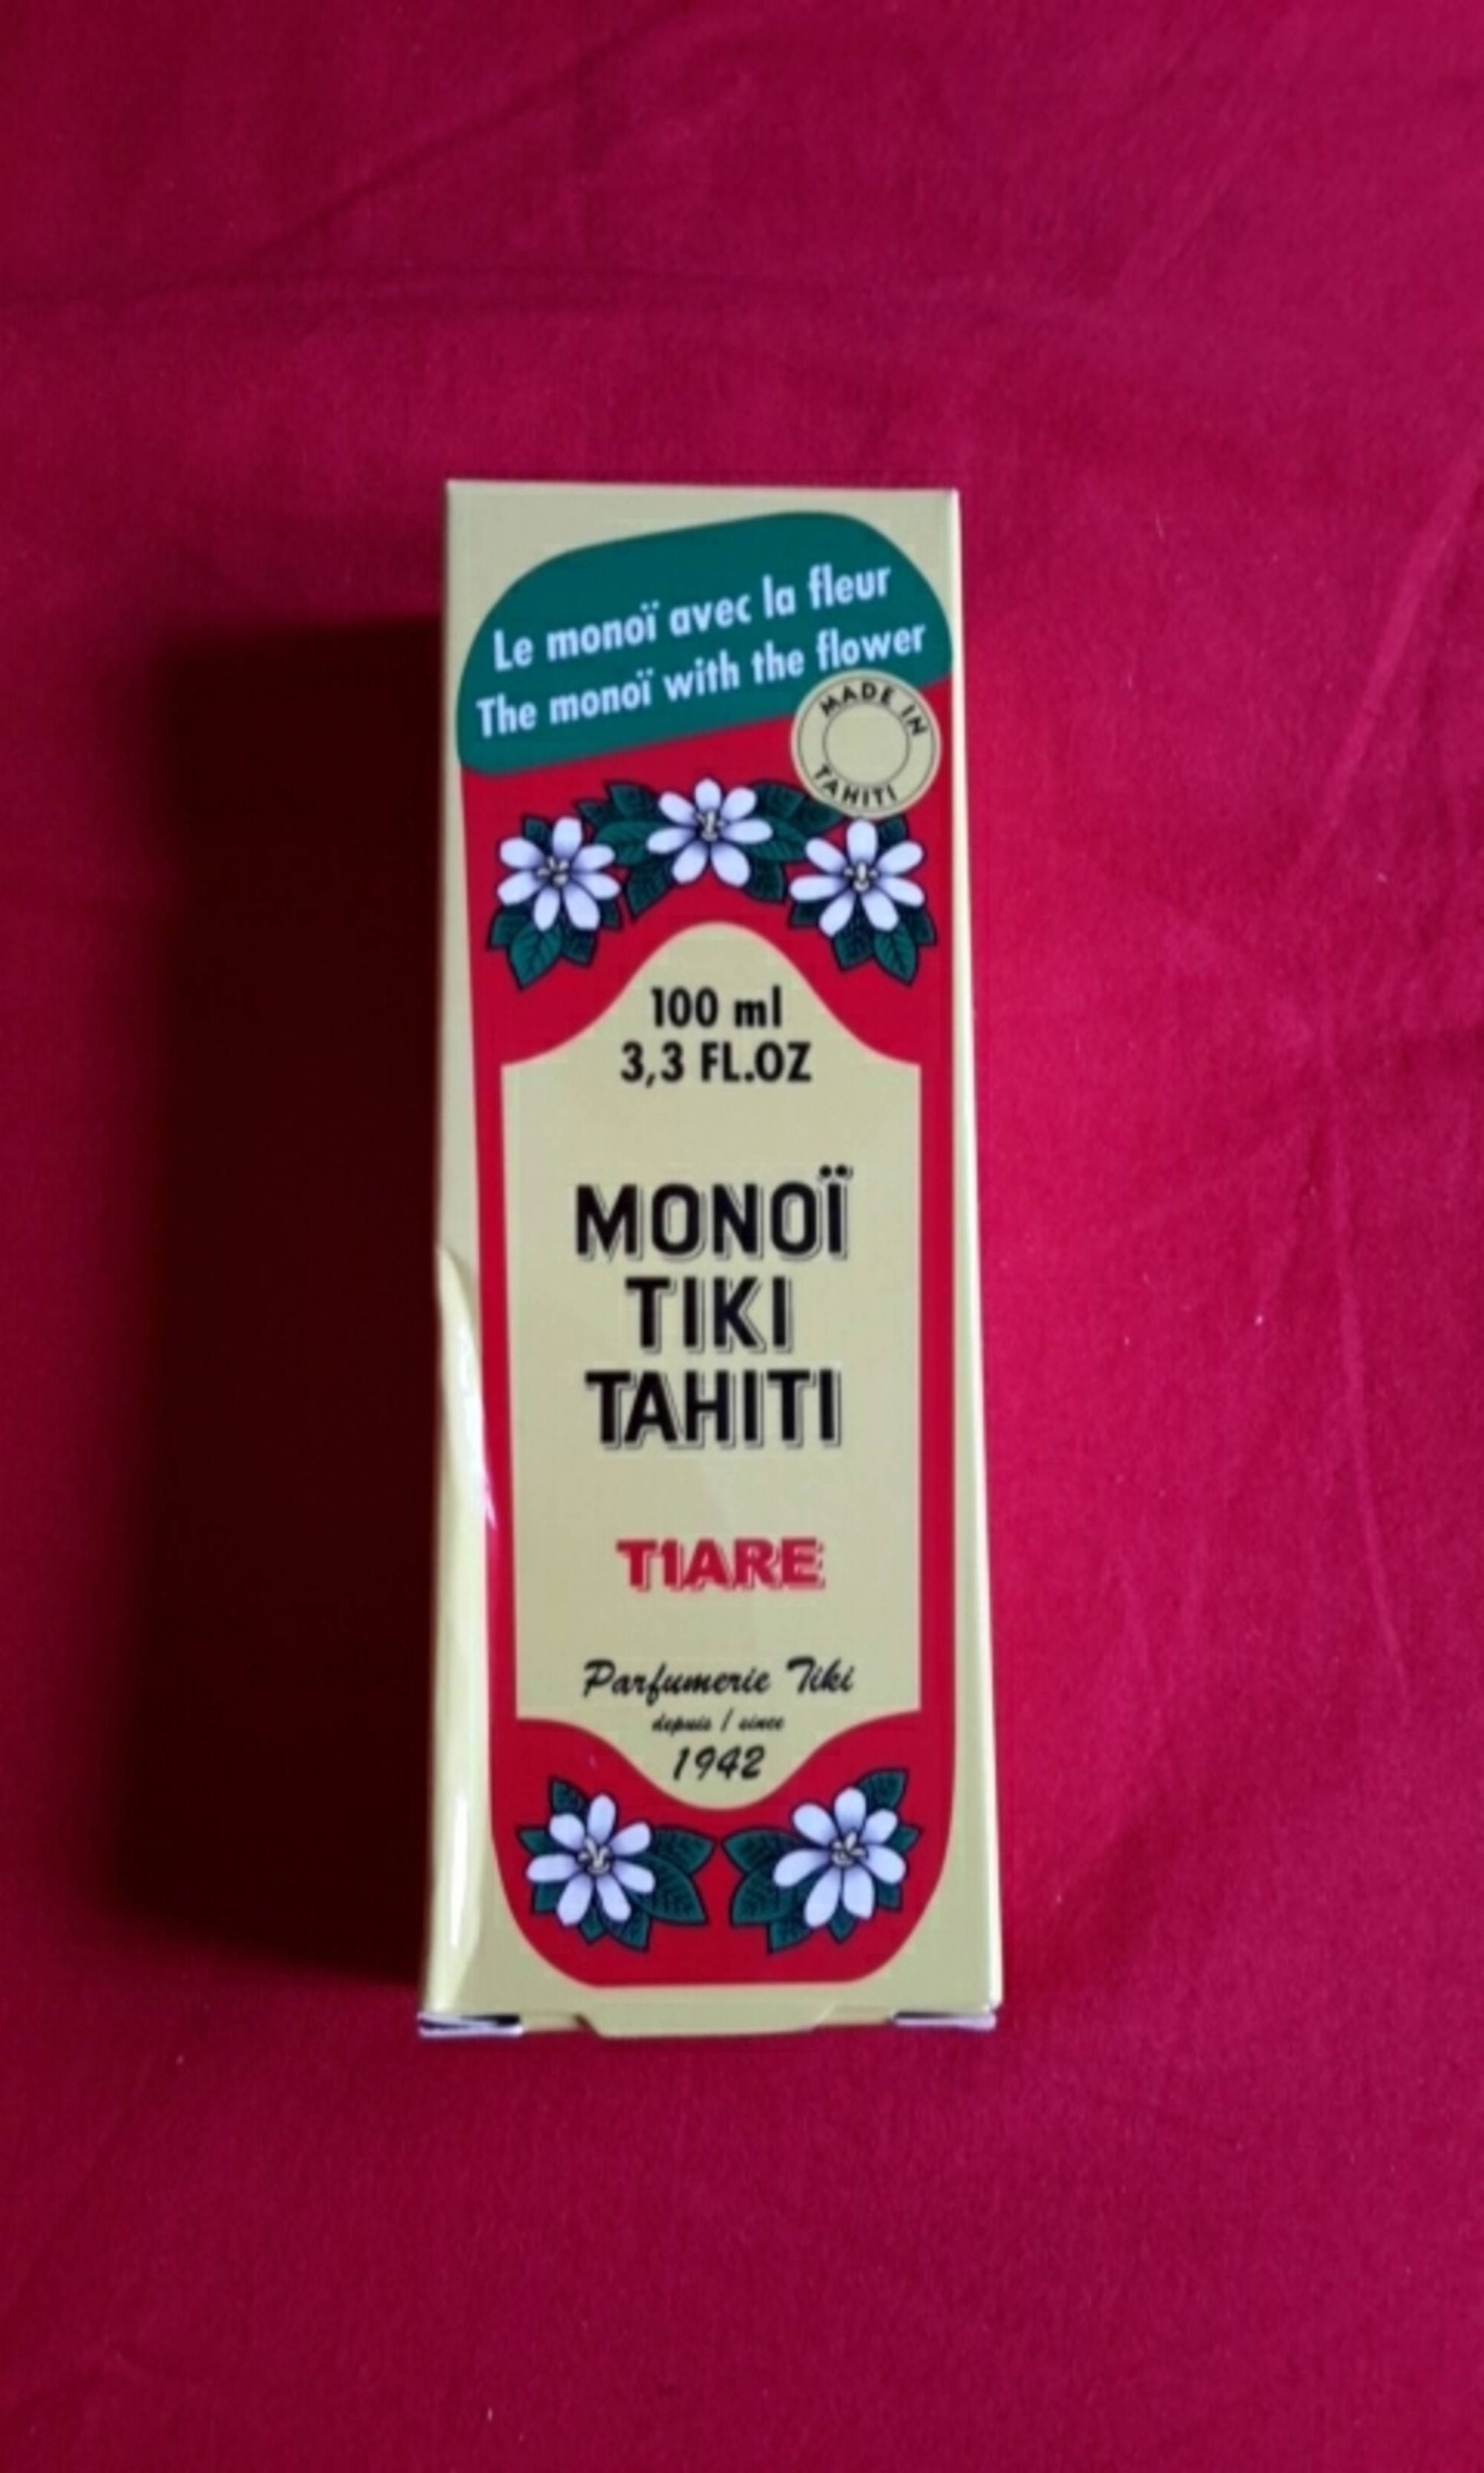 PARFUMERIE TIKI - Tiaré - Monoï Tiki Tahiti